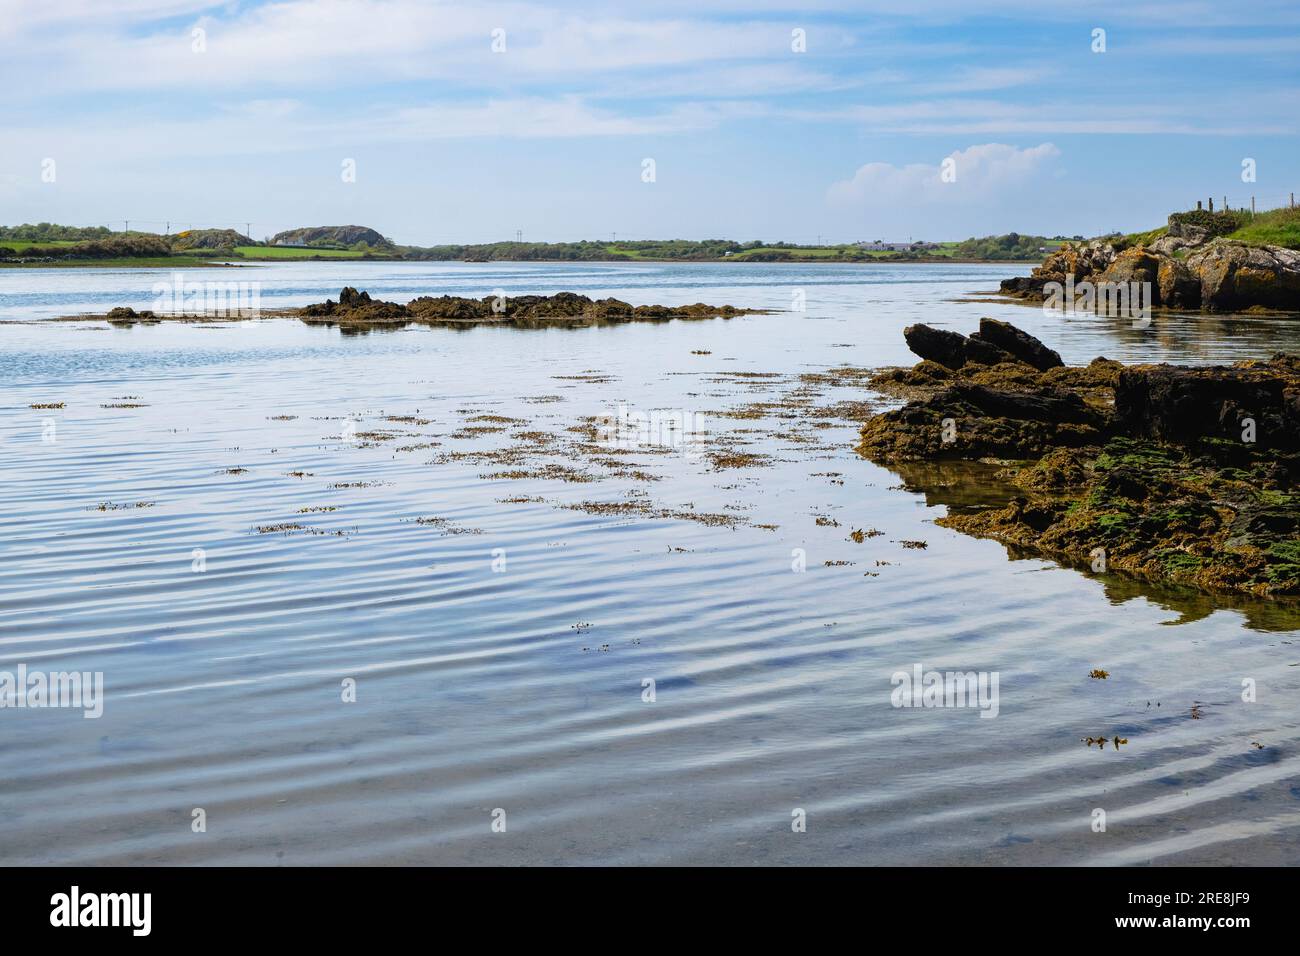 Vue sur l'eau calme et tranquille dans la mer intérieure à marée haute près de four Mile Bridge, Caergeiliog, île d'Anglesey, pays de Galles, Royaume-Uni, Grande-Bretagne Banque D'Images